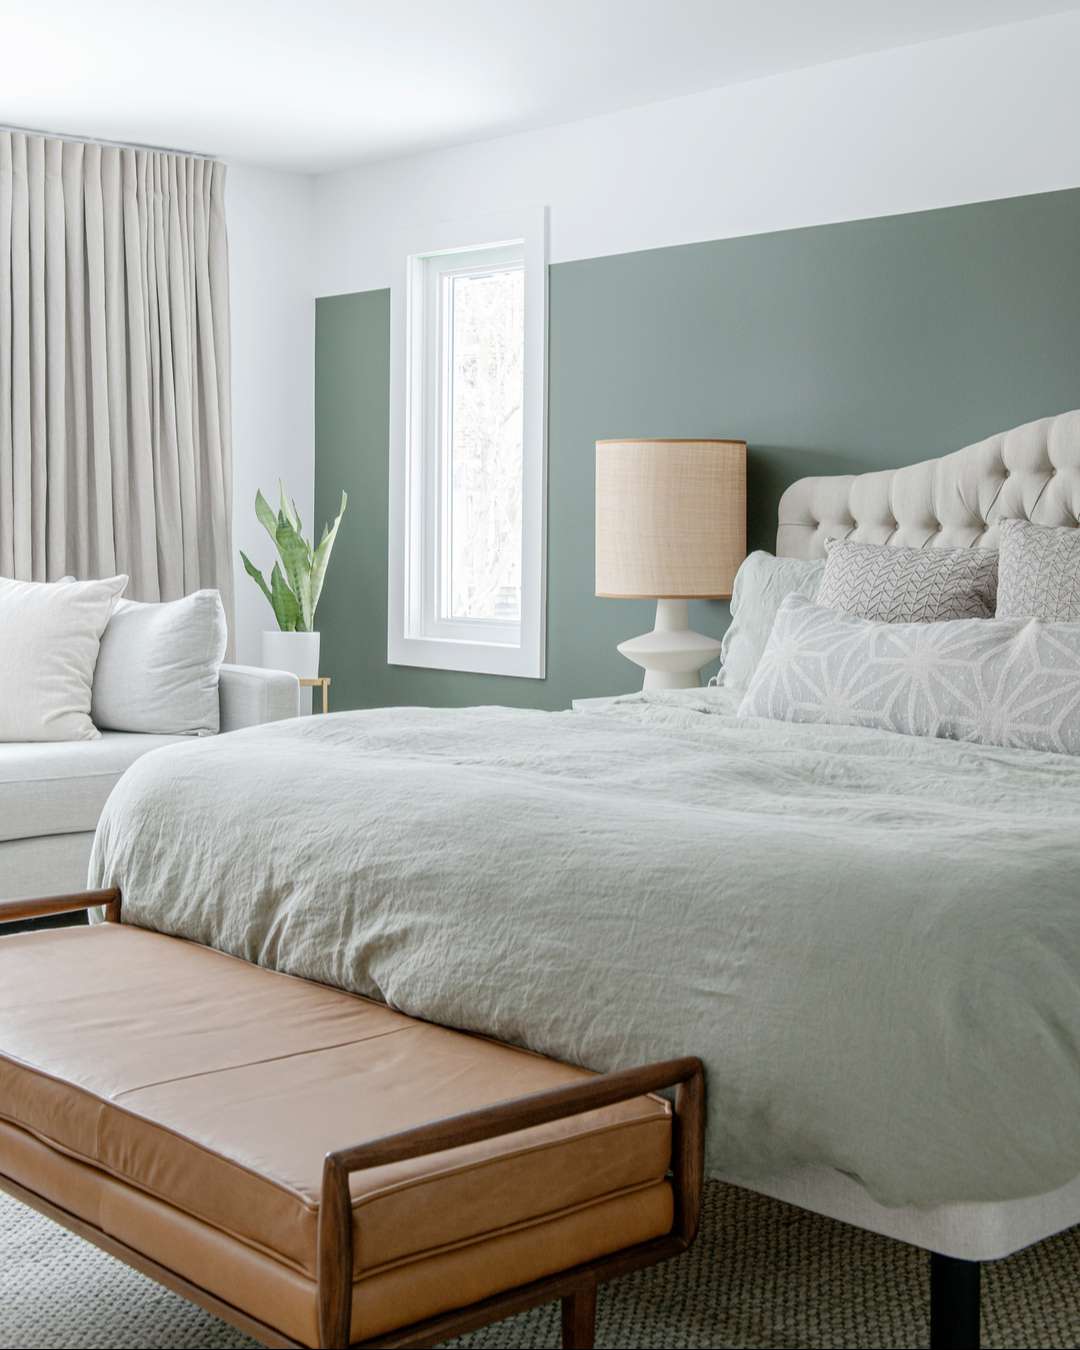 Dormitorio monocromático verde menta.